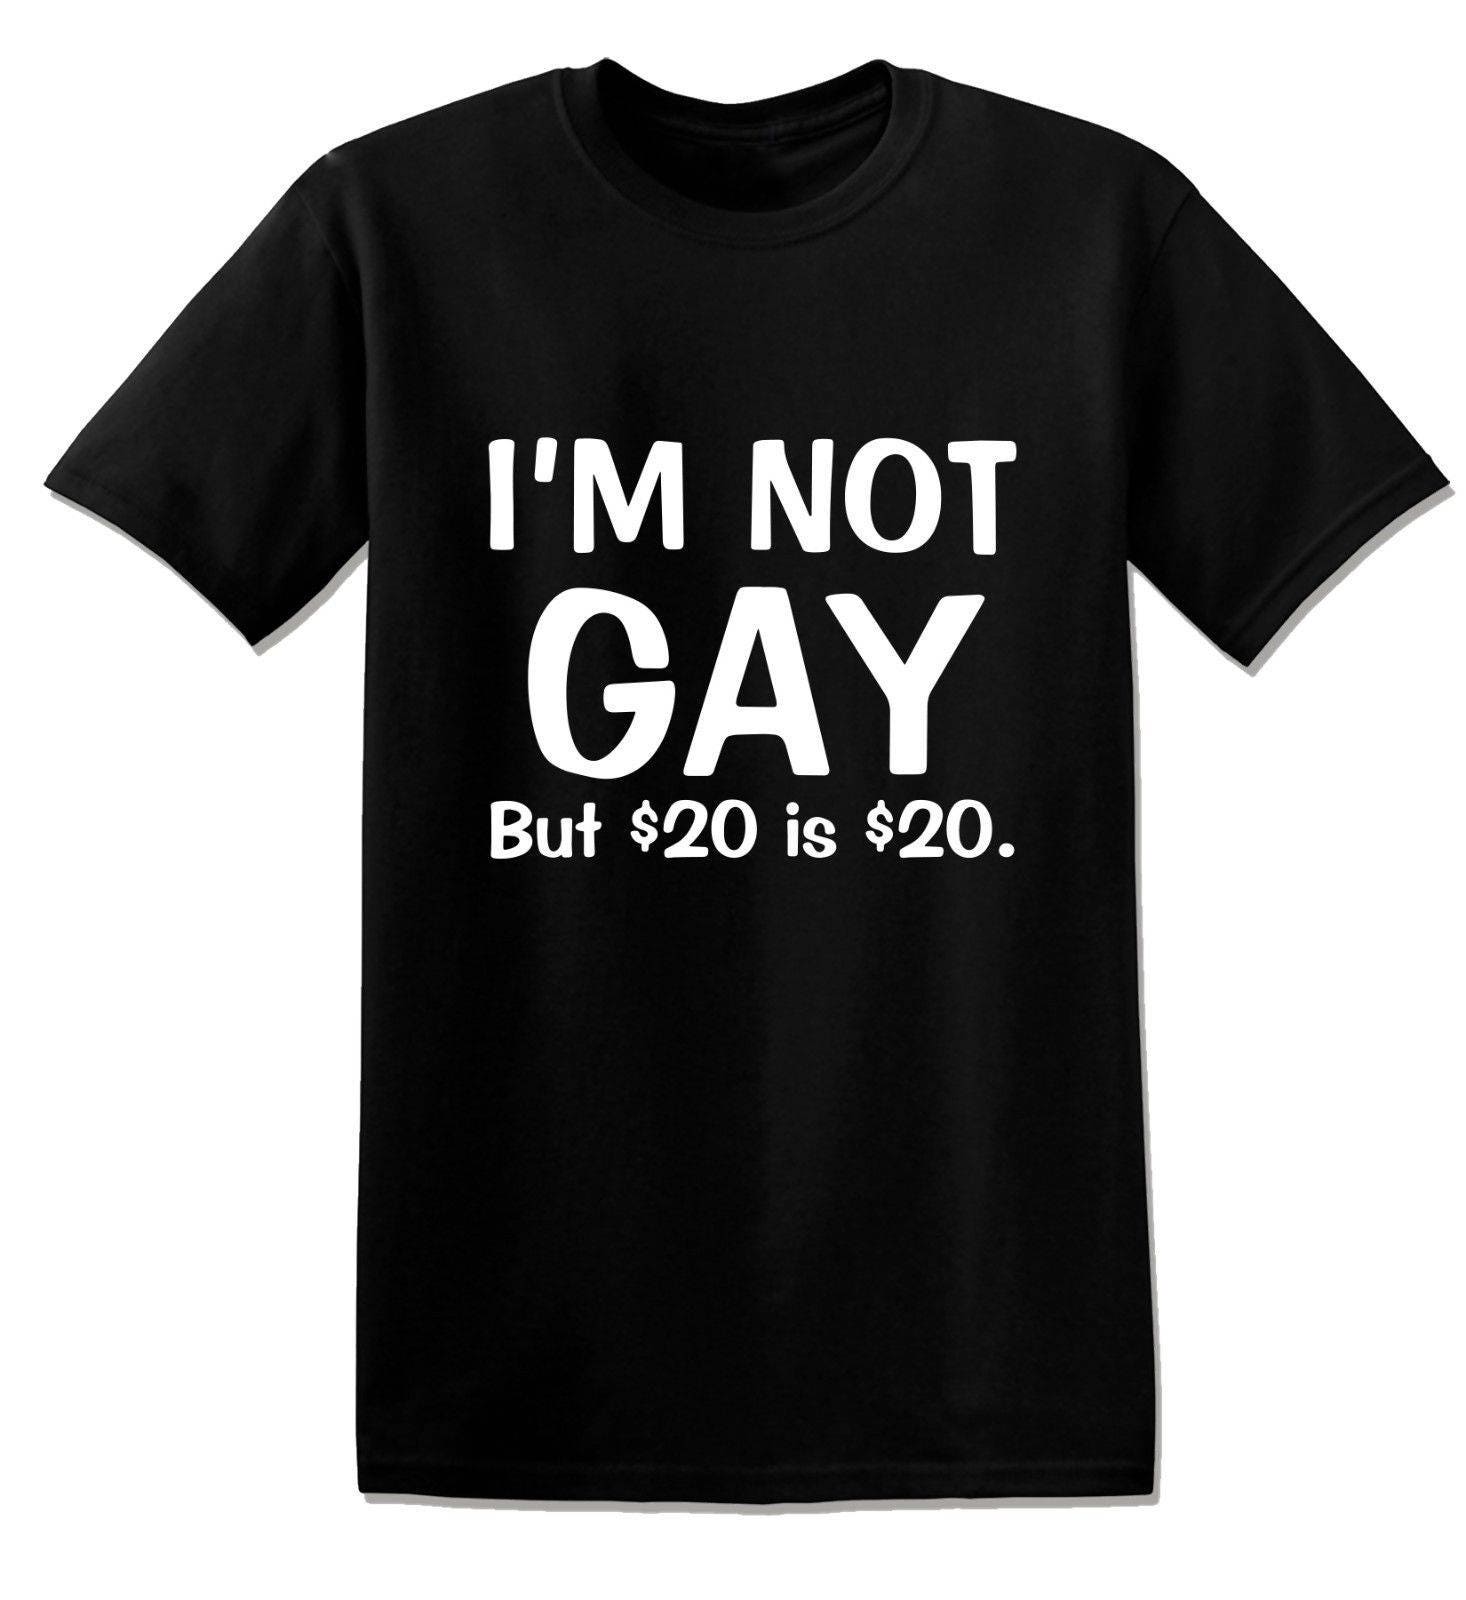 Ausdruck Einschränkungen Hohlraum t shirt i am not gay but $20 is $20 ...